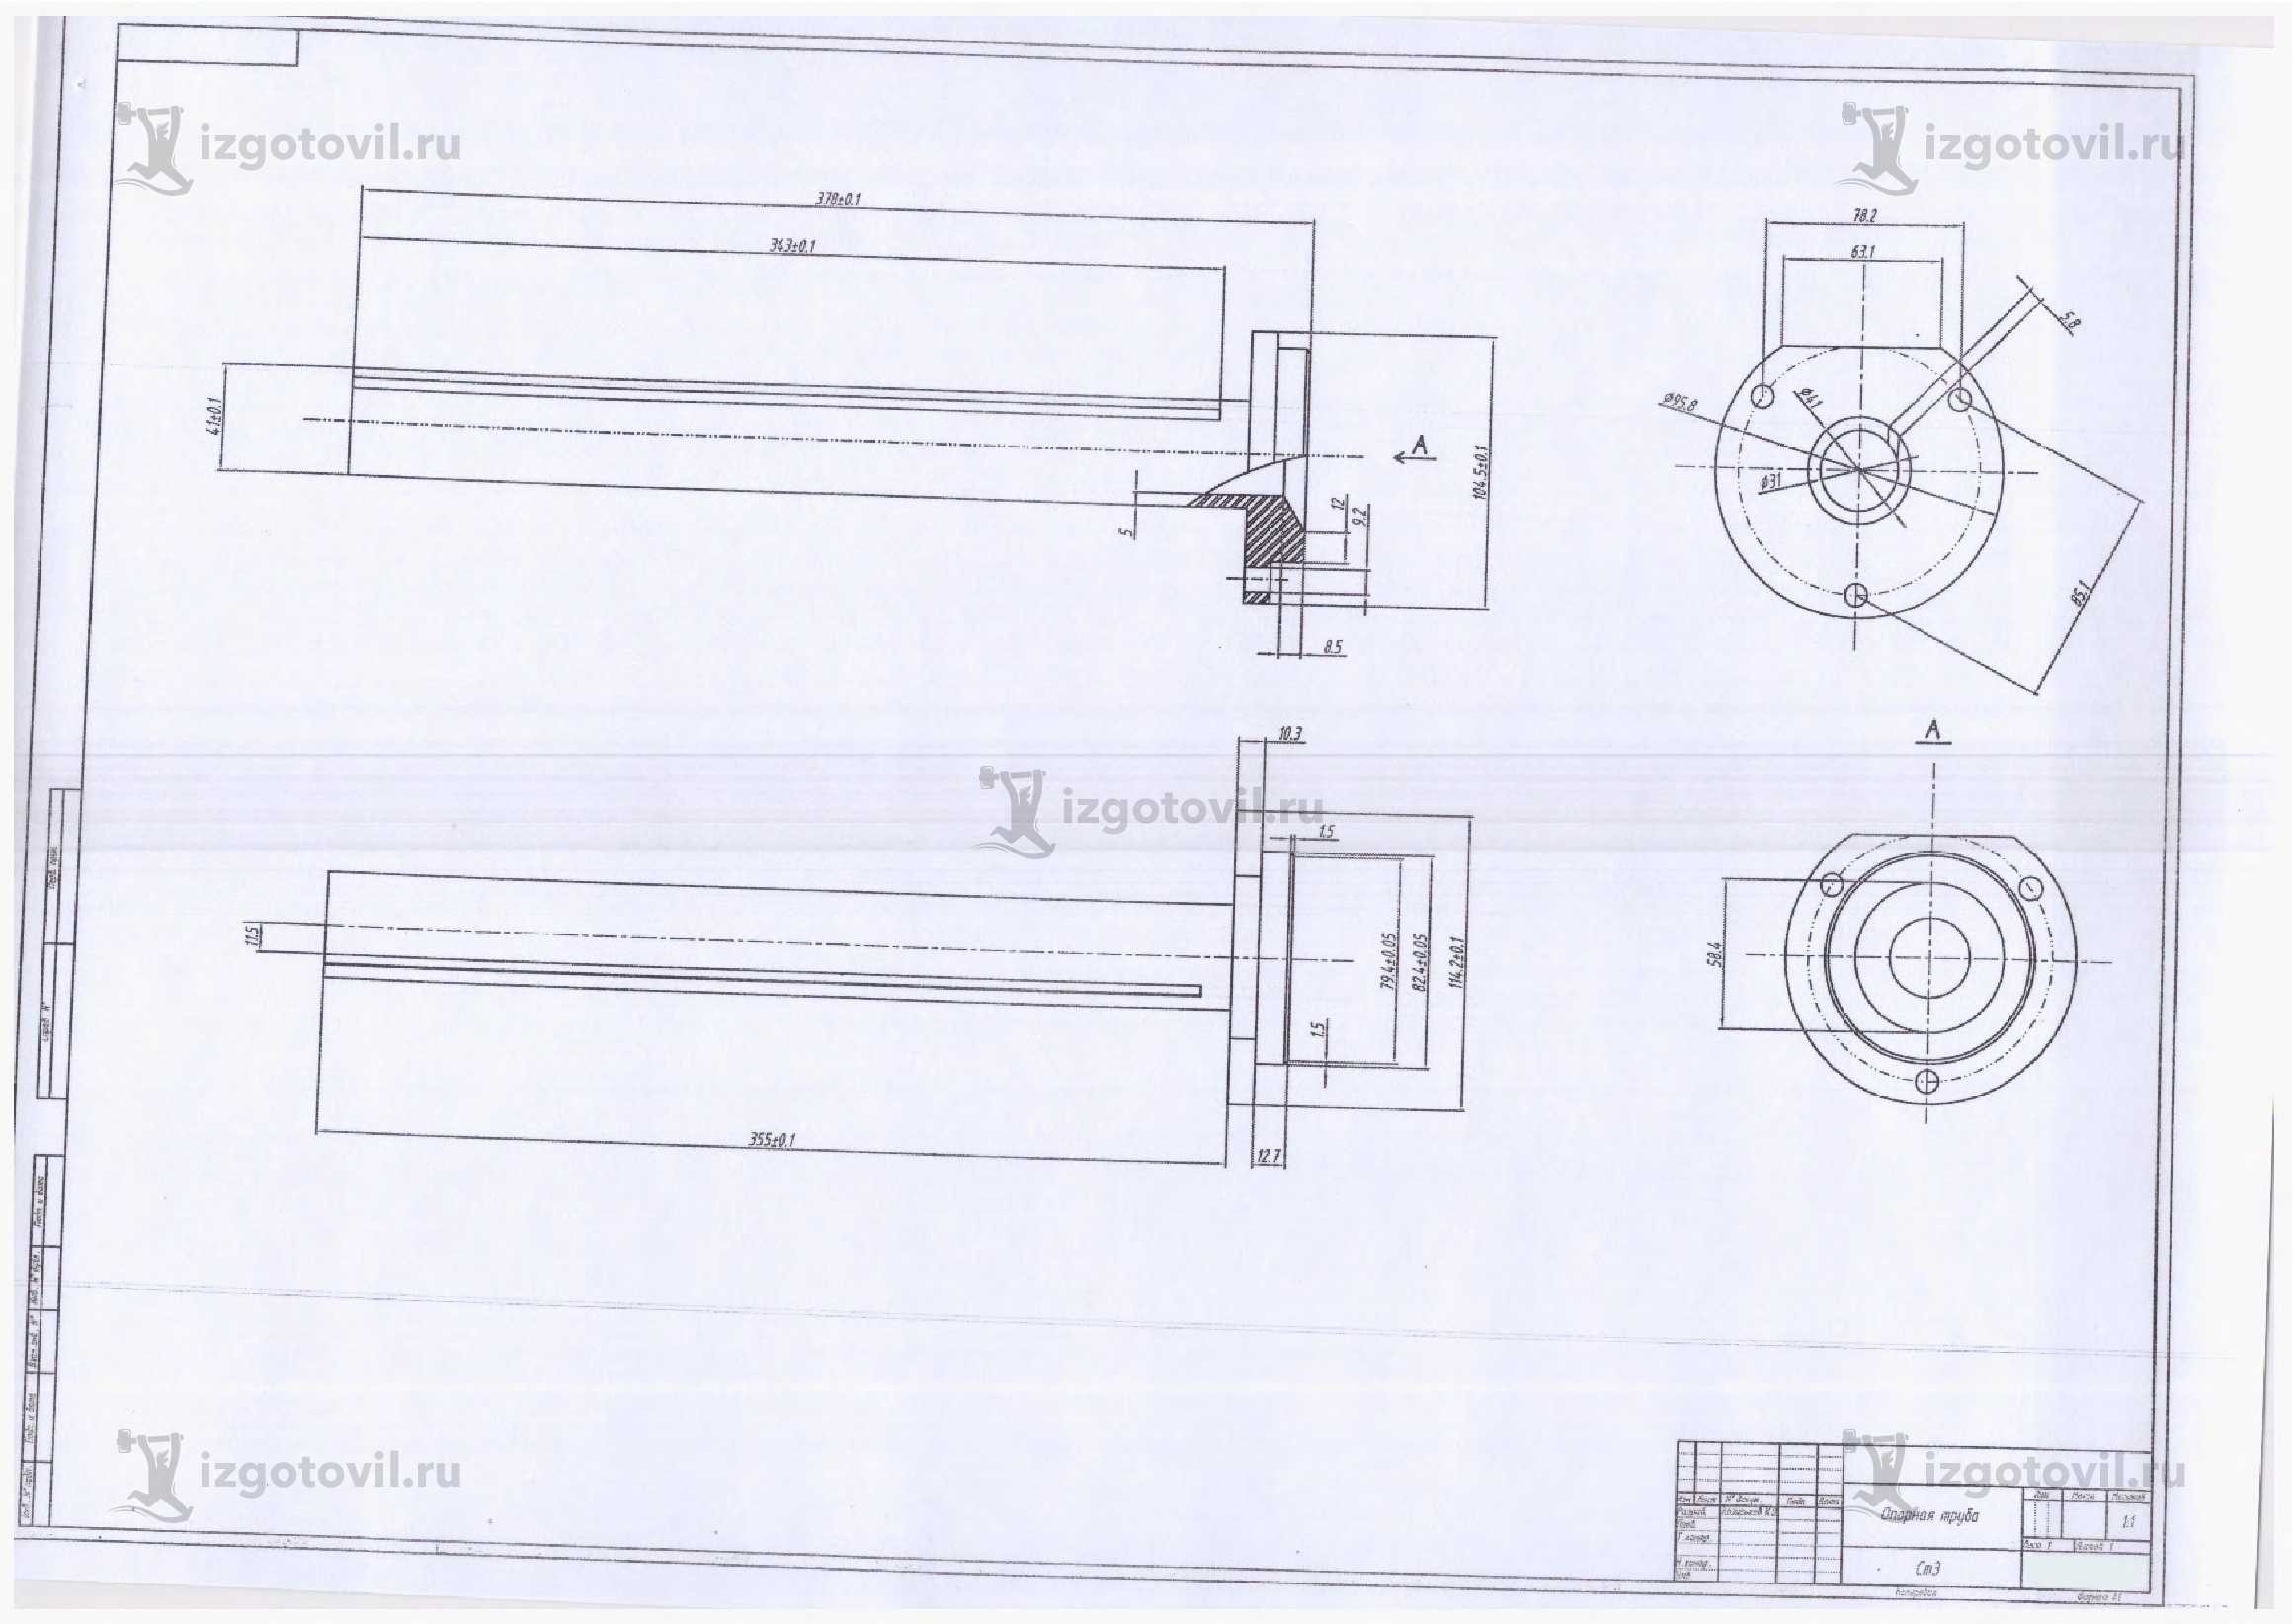 Изготовление деталей по чертежам (опорная труба, калибры, кольца, ниппели).